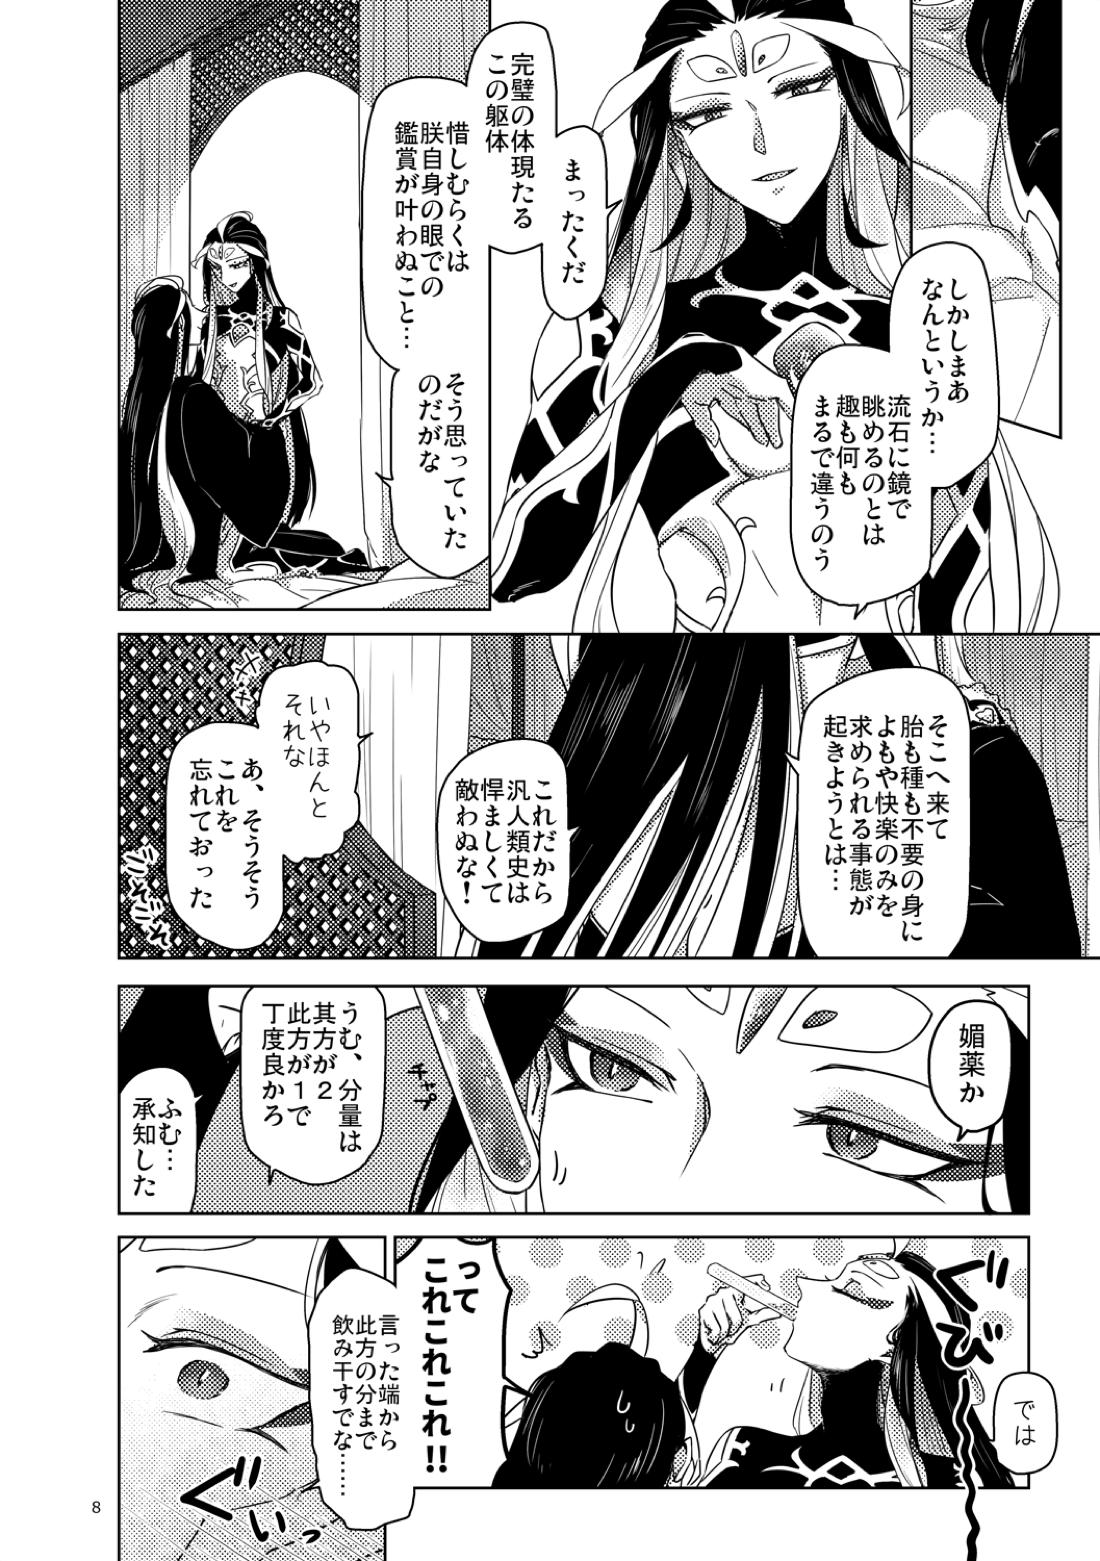 【BL漫画 Fate/Grand Order】男性体と無性体の始皇帝が同期するために媚薬を口にしながら肌を重ねるイチャイチャボーイズラブエッチ9